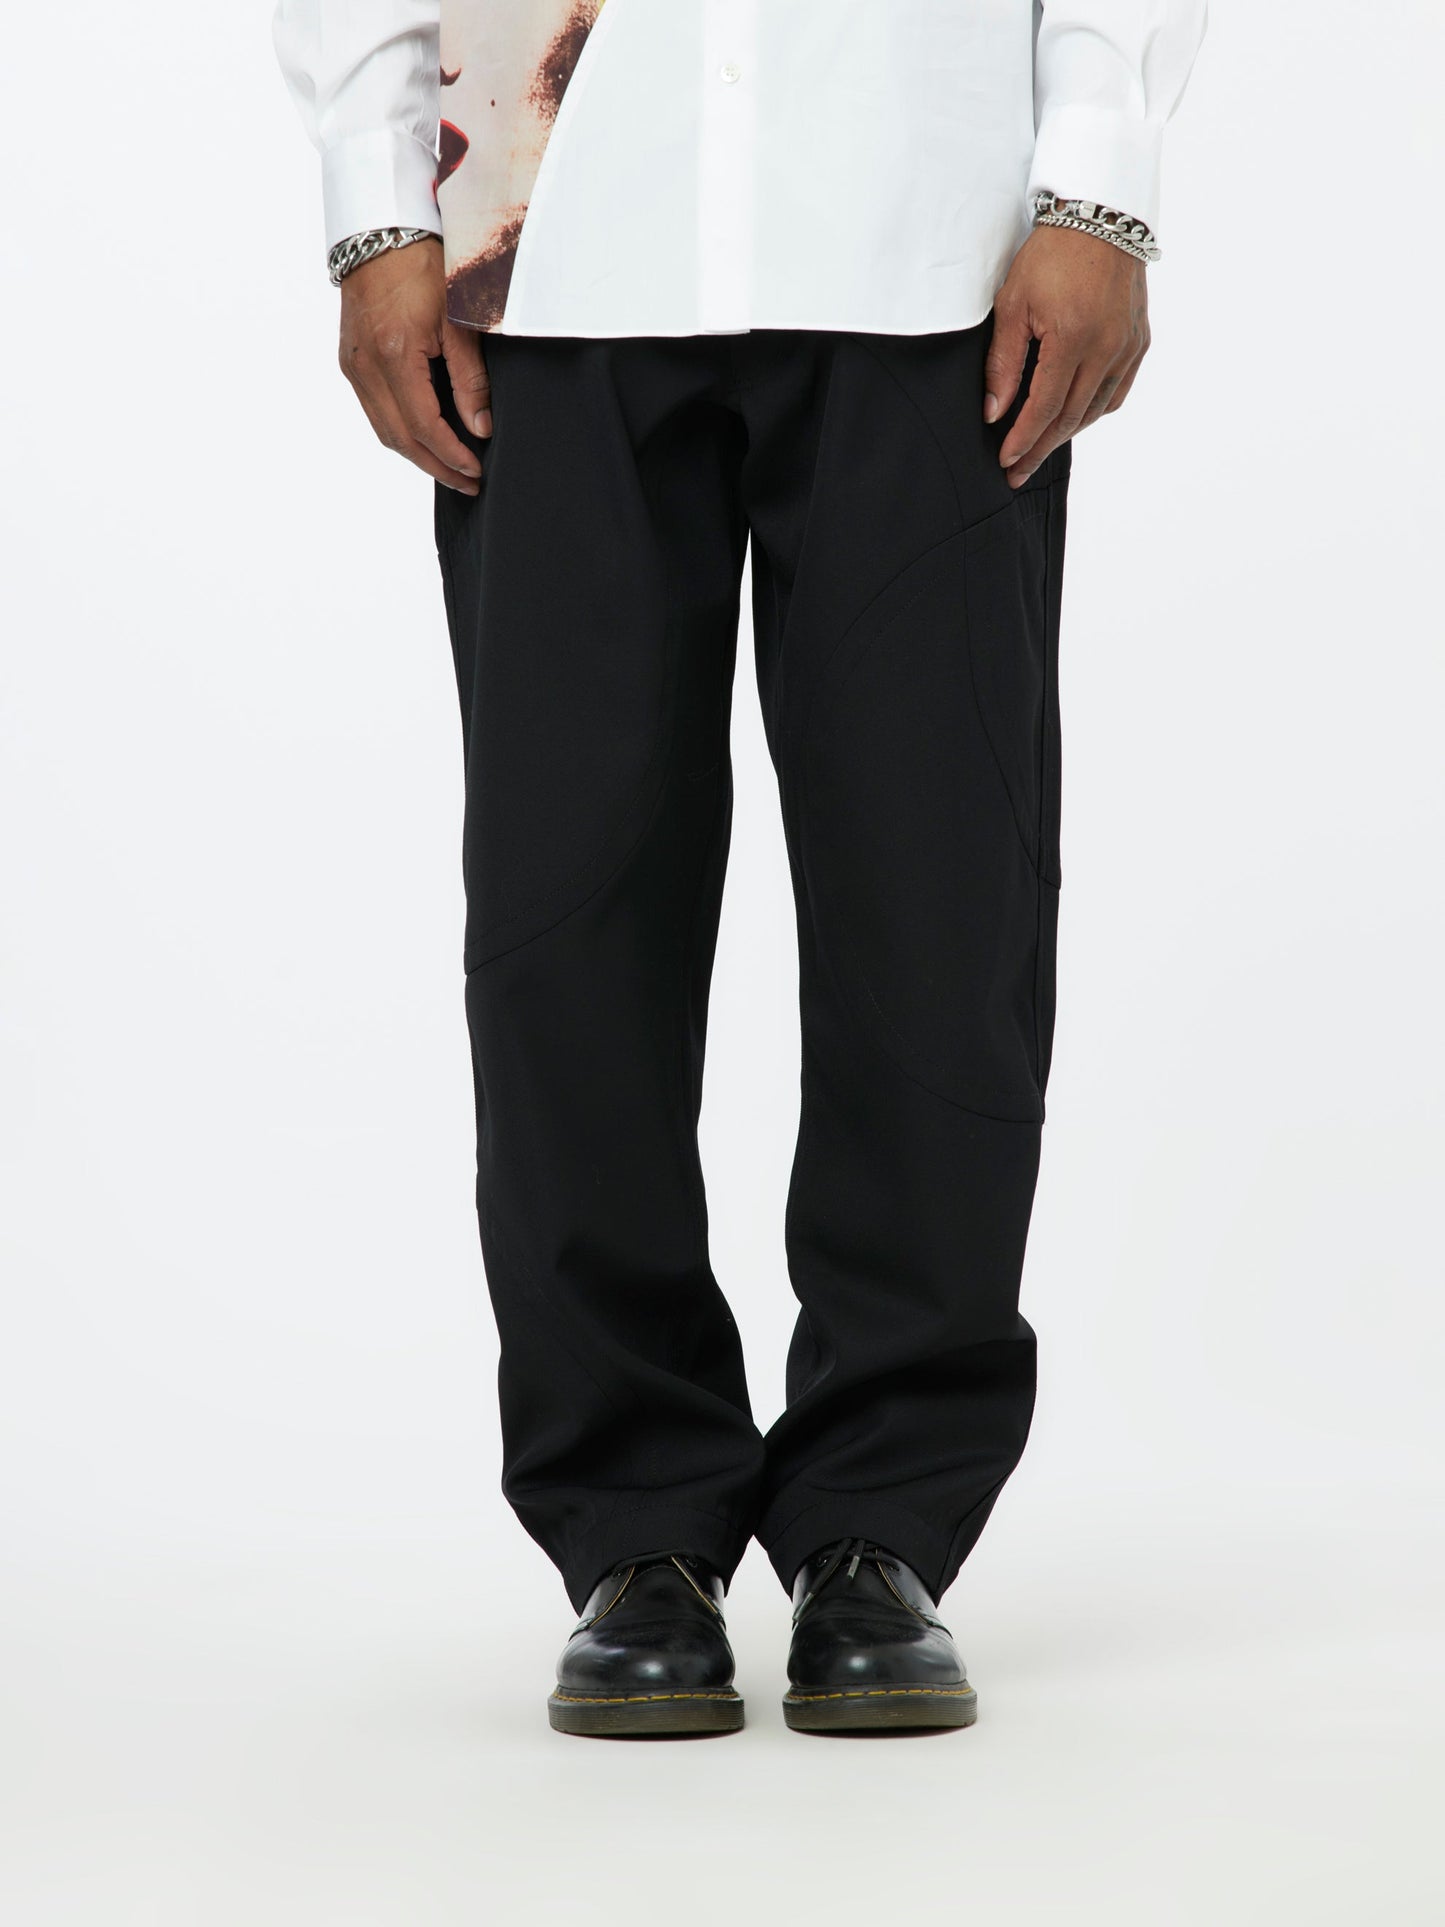 CDG Shirt Trousers (Black)